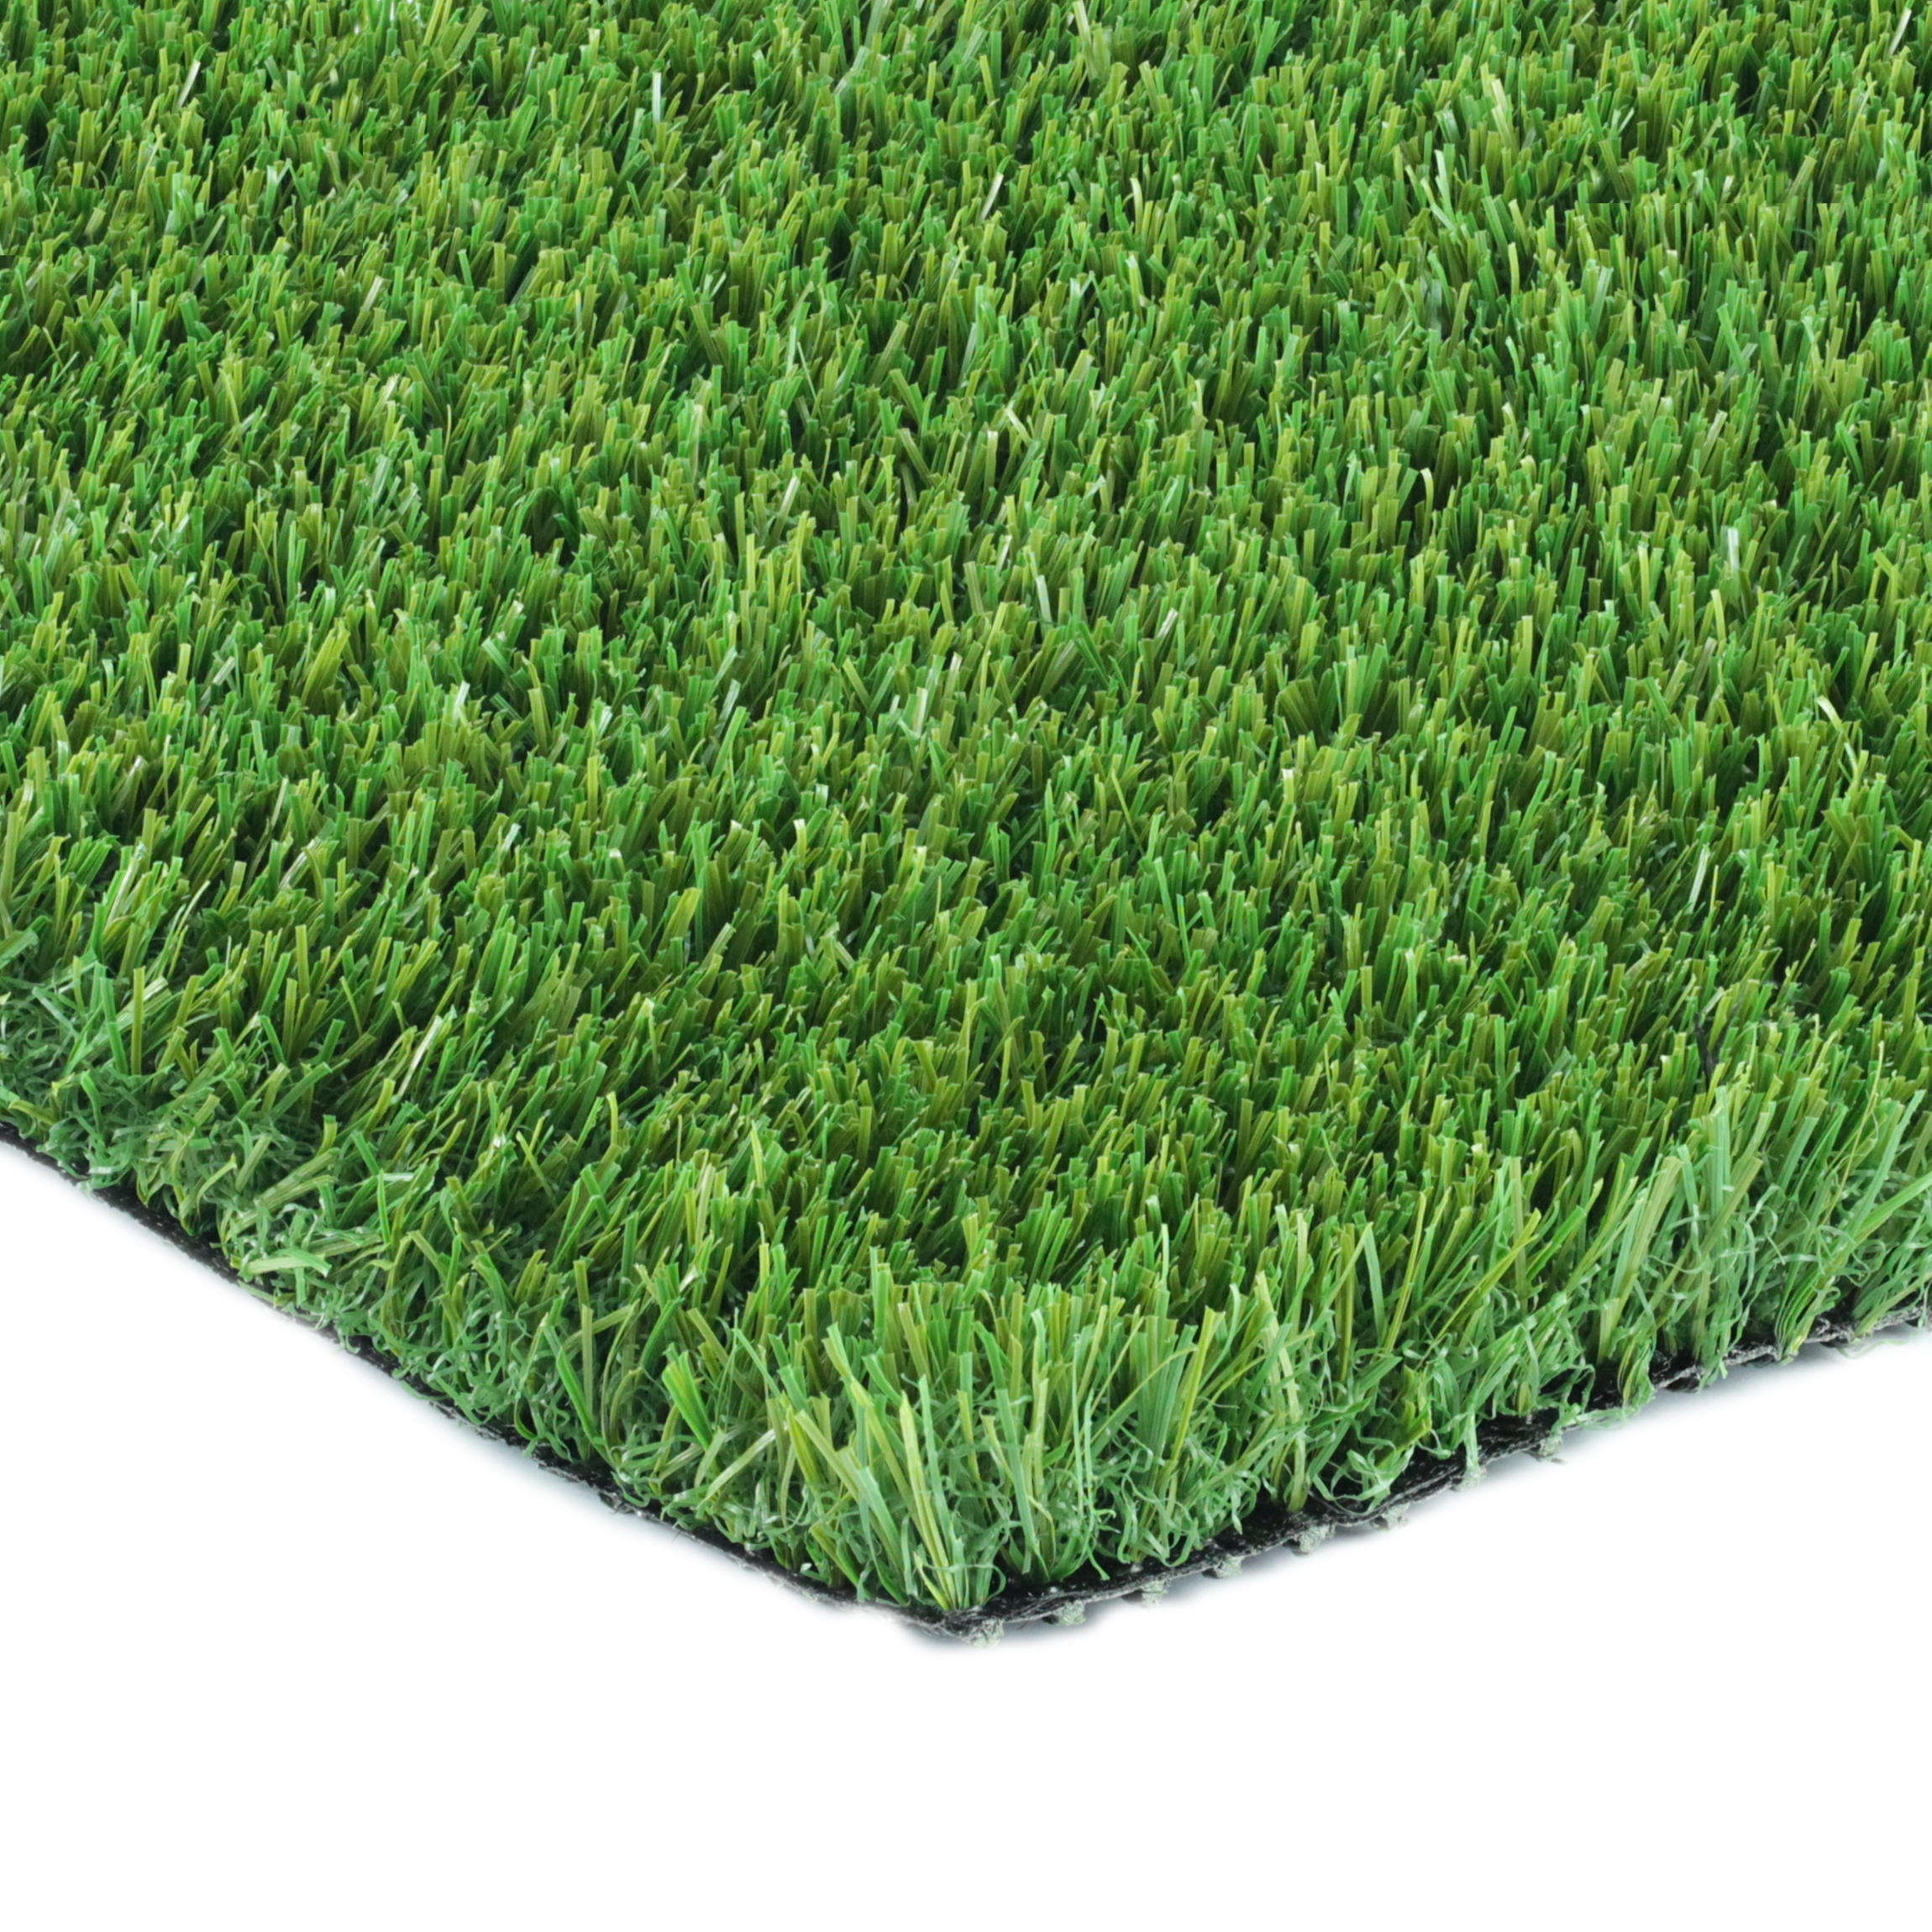 Artificial Grass Evergreen Best Artificial Grass